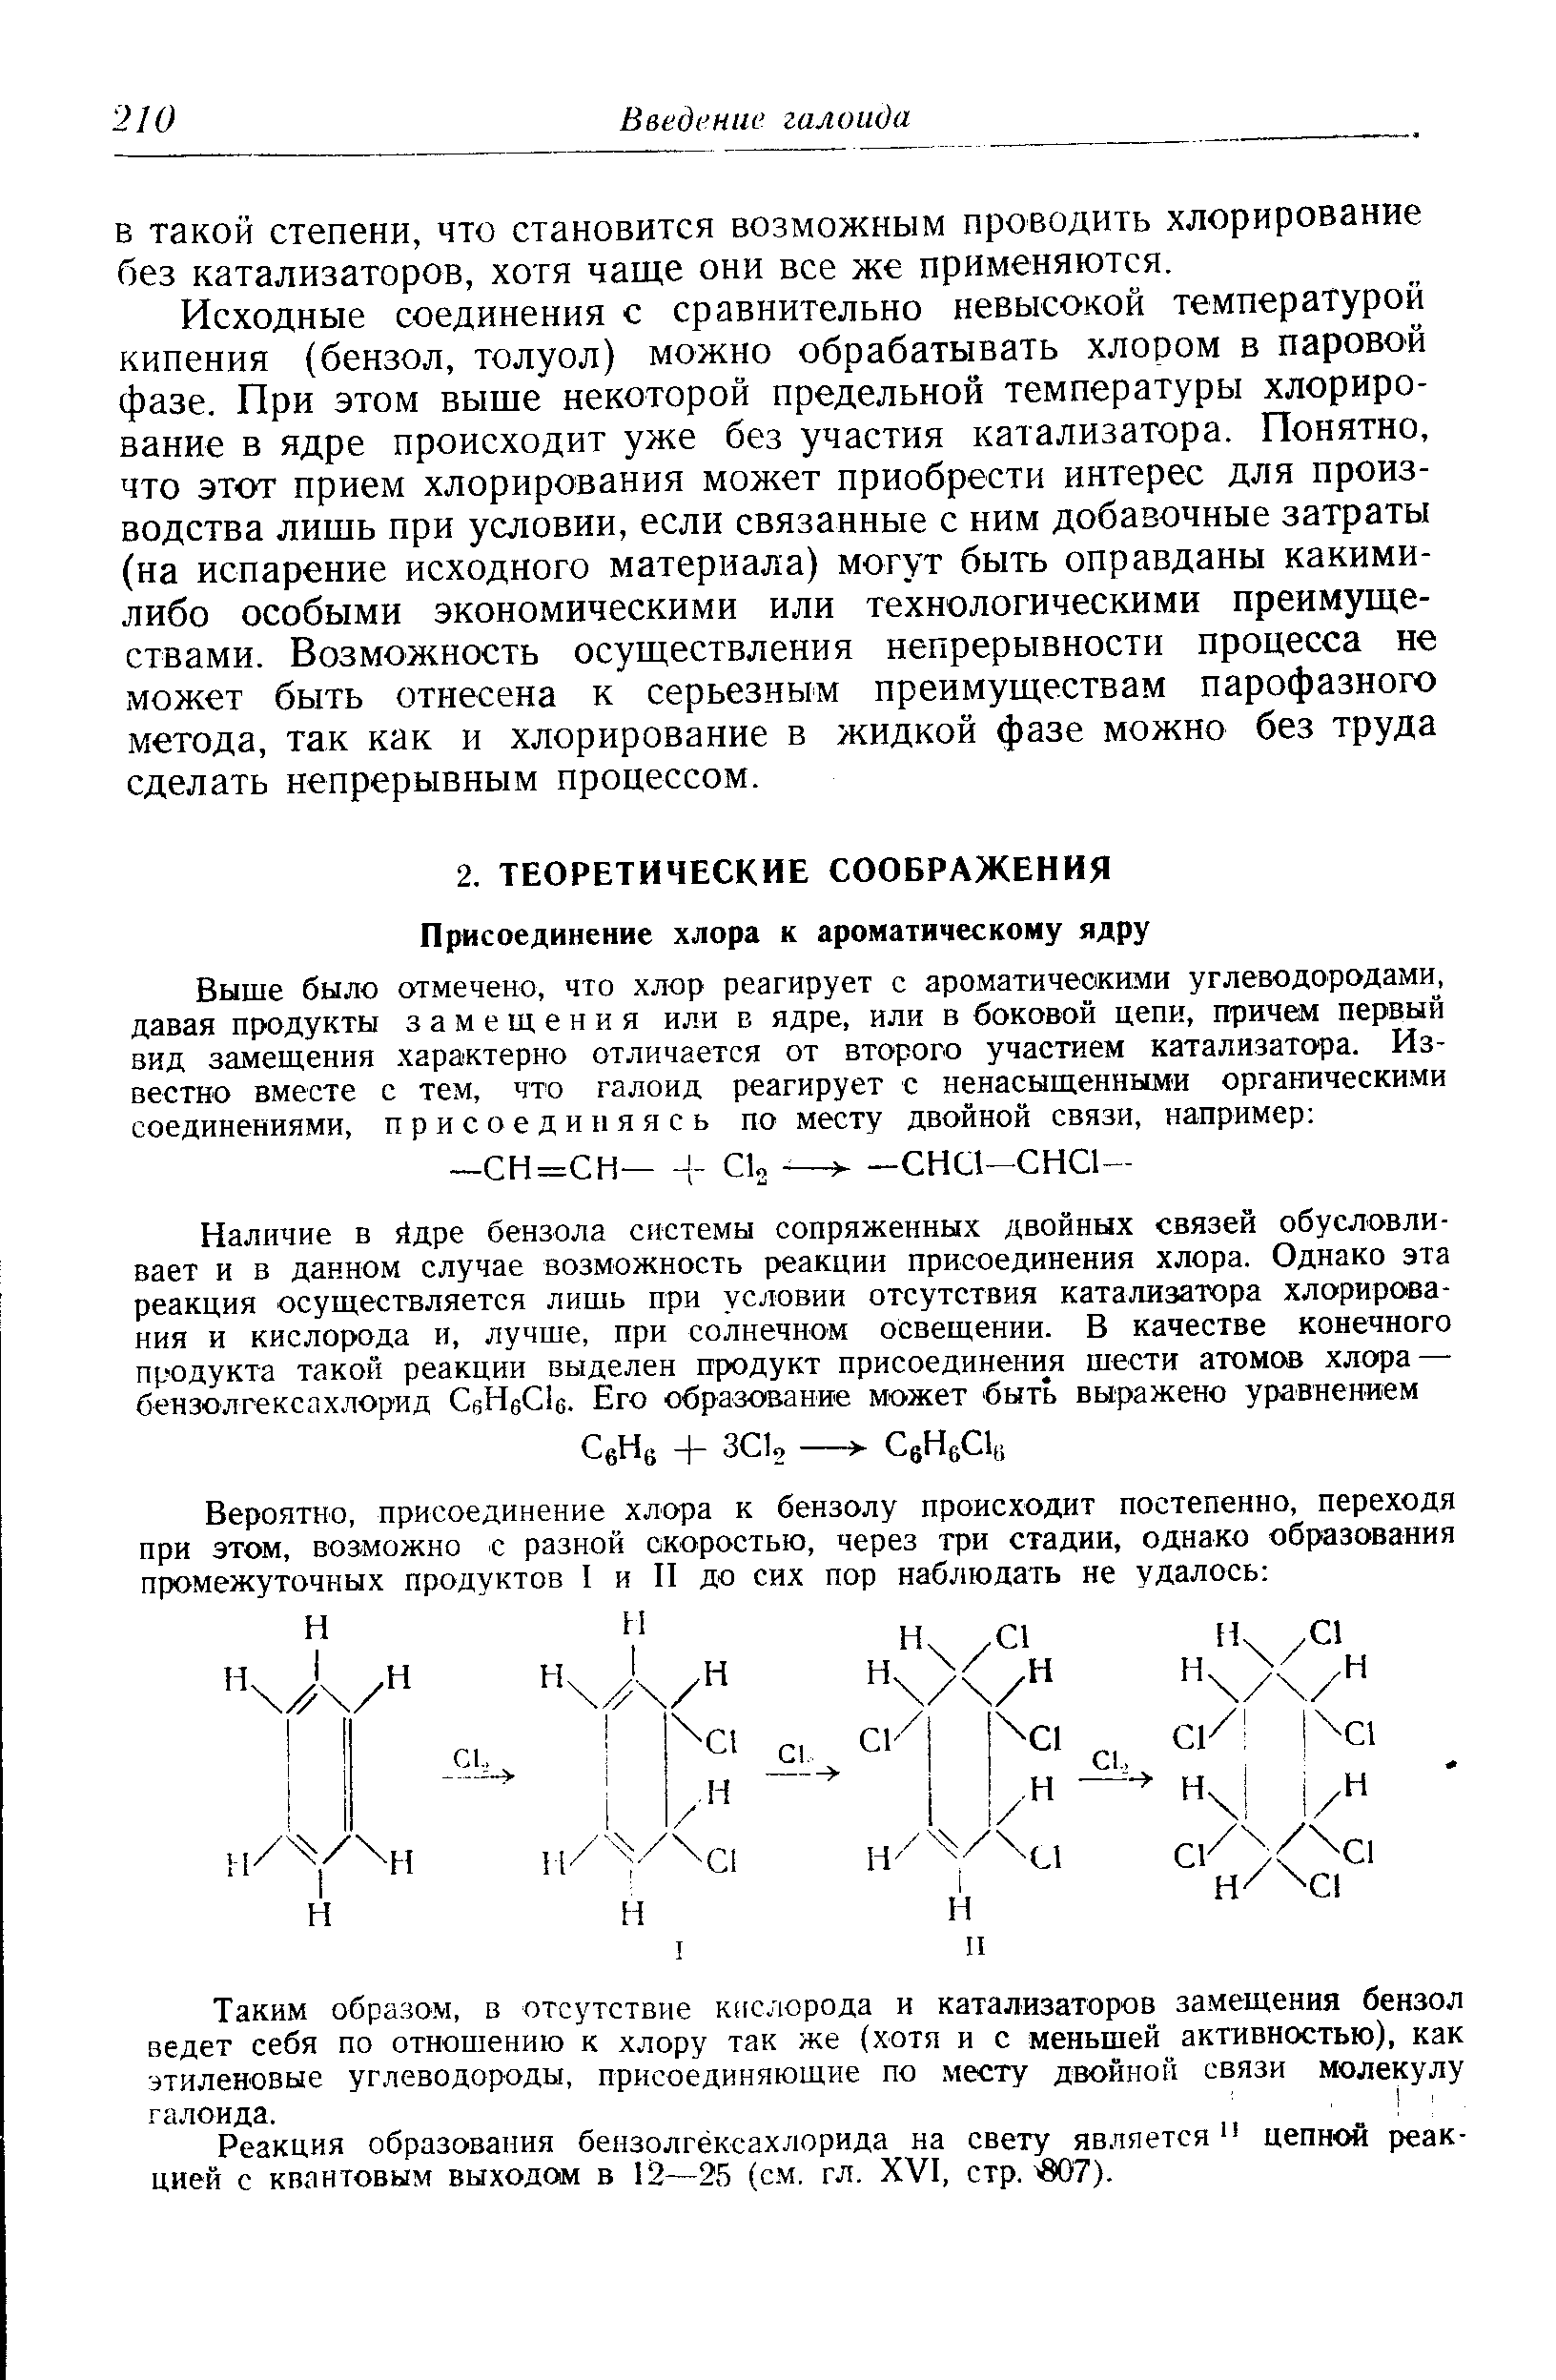 Реакция образования бензолгёксахлорида на свету является цепной реакцией с квантовым выходом в 12—25 (с.м, гл. XVI, стр. 807).